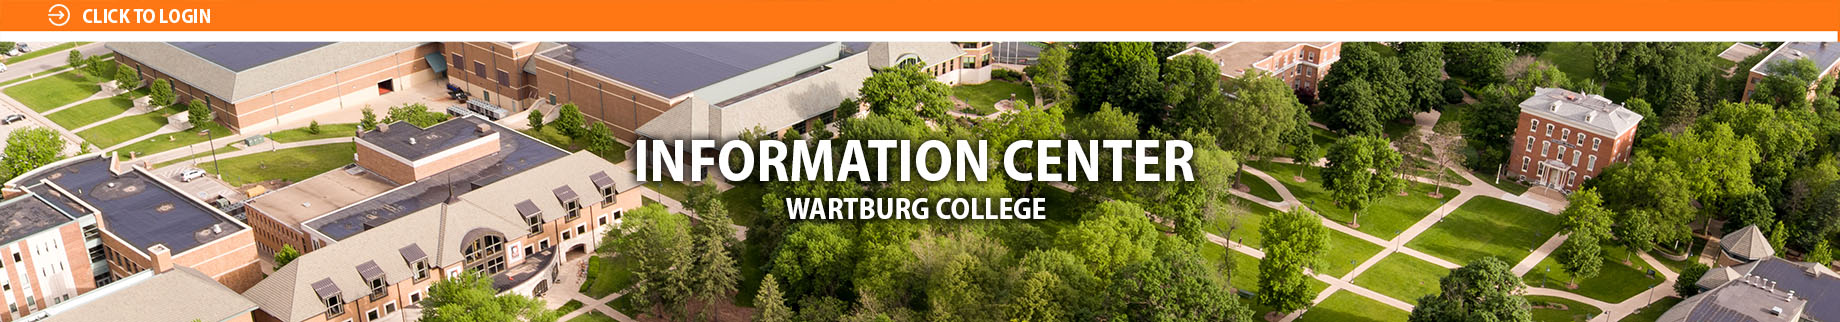 Information Center: Wartburg College Banner